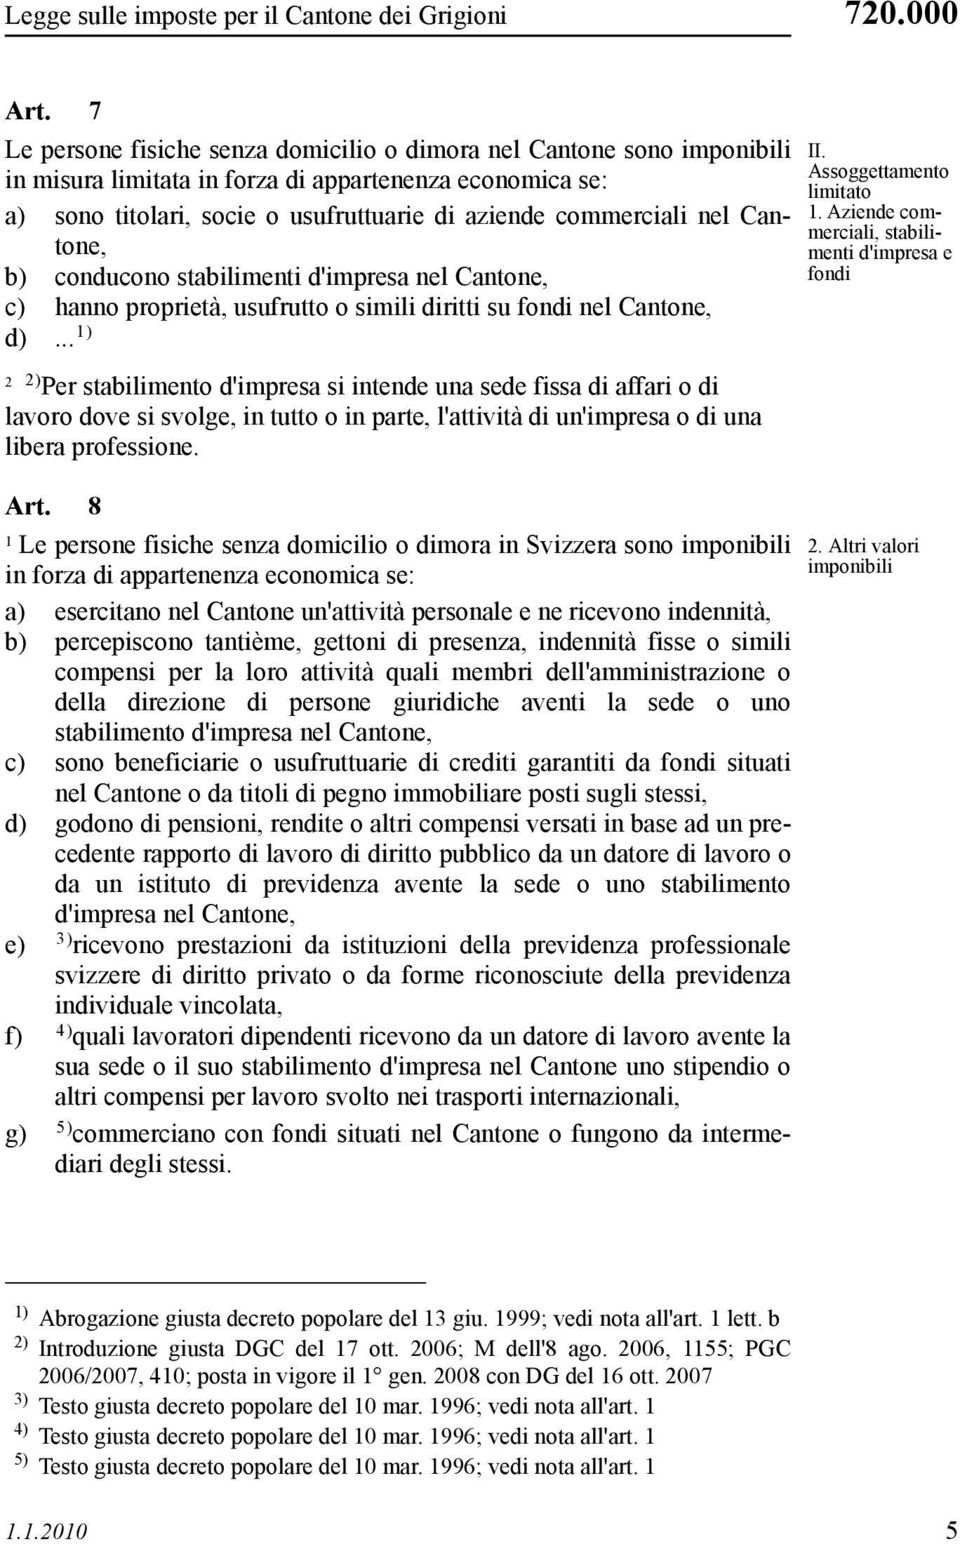 Cantone, b) conducono stabilimenti d'impresa nel Cantone, c) hanno proprietà, usufrutto o simili diritti su fondi nel Cantone, d).